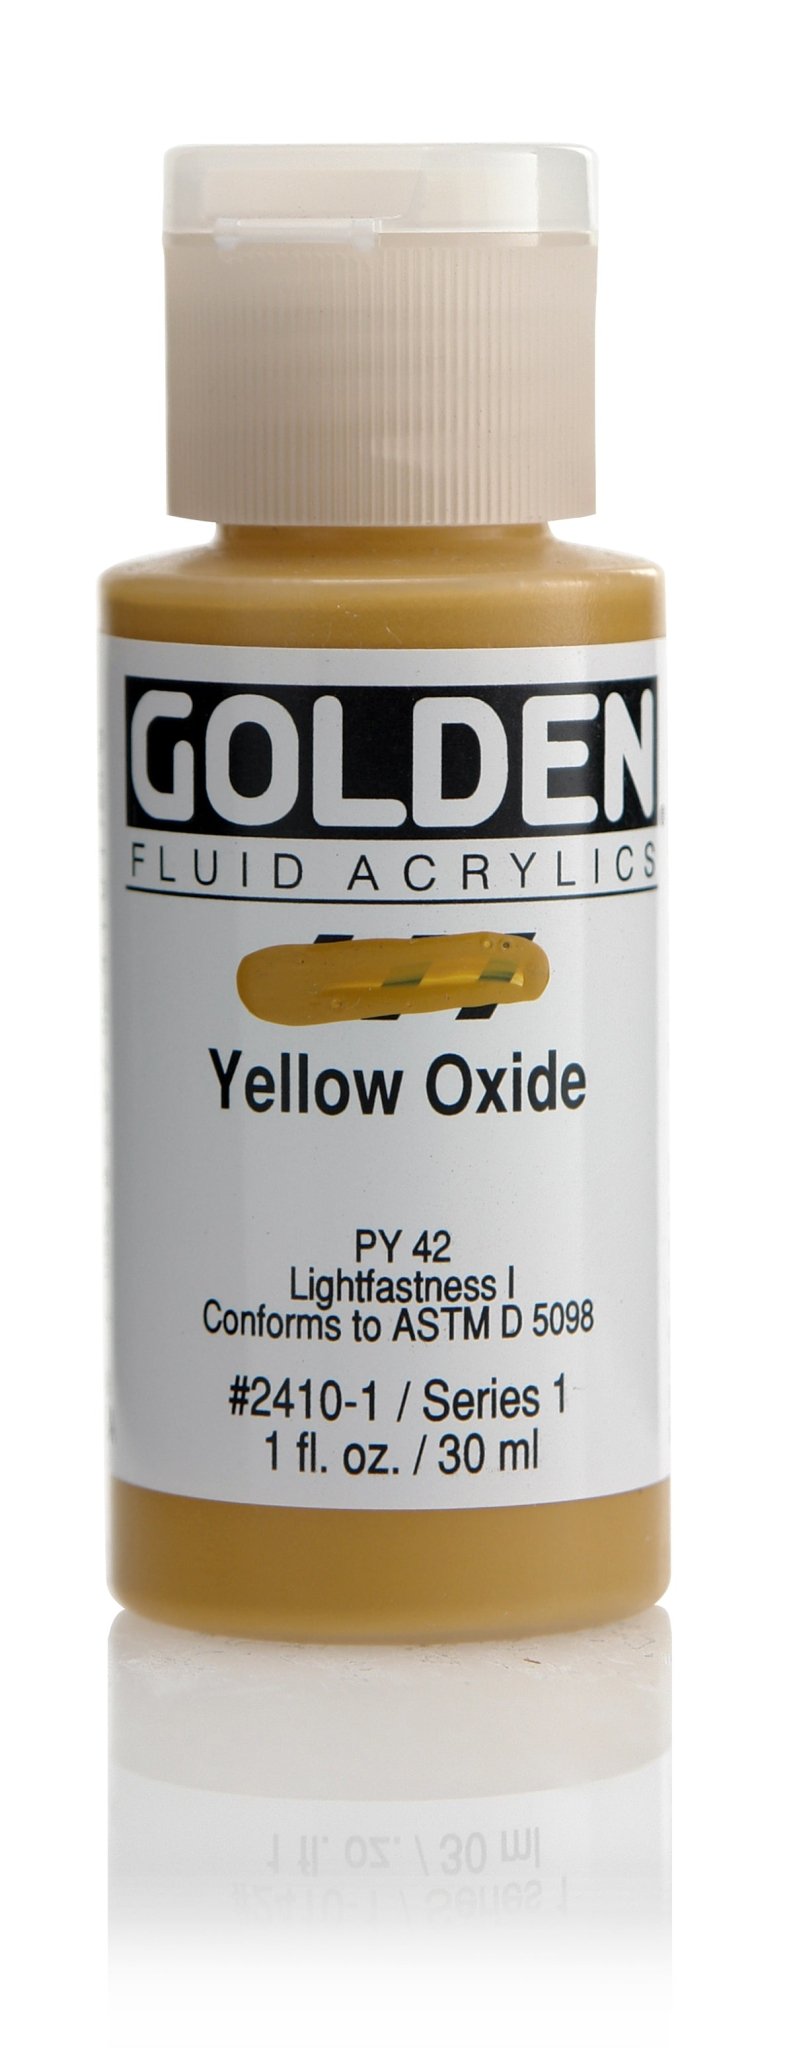 Golden Fluid Acrylics - Yellow Oxide - 30ml - Create A Little Magic (Pty) Ltd